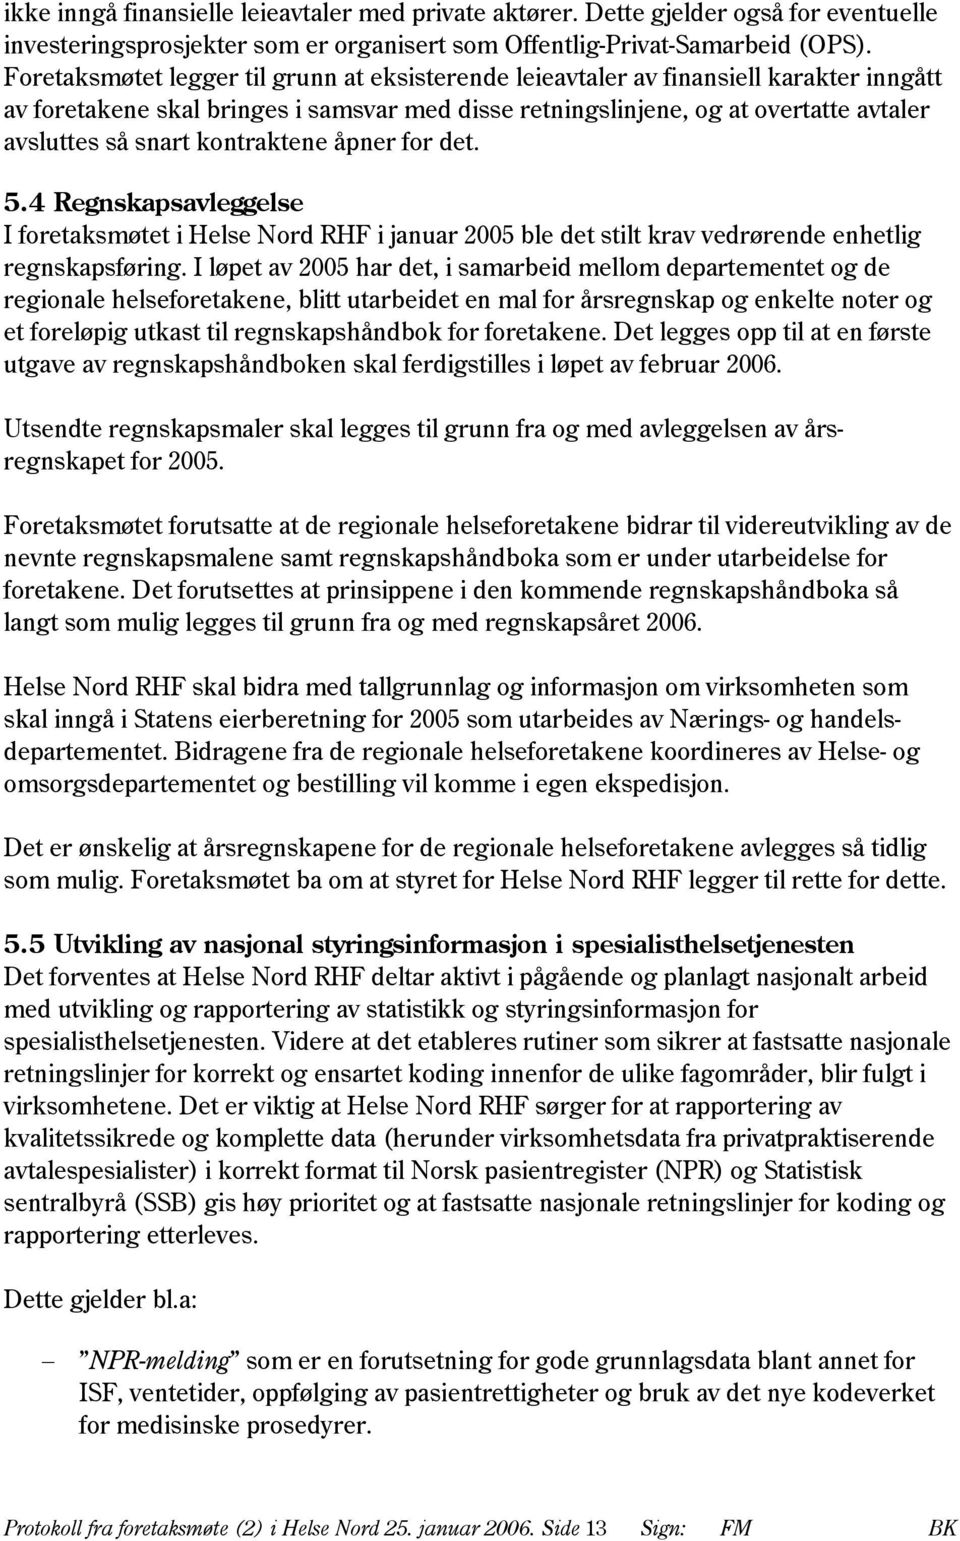 kontraktene åpner for det. 5.4 Regnskapsavleggelse I foretaksmøtet i Helse Nord RHF i januar 2005 ble det stilt krav vedrørende enhetlig regnskapsføring.